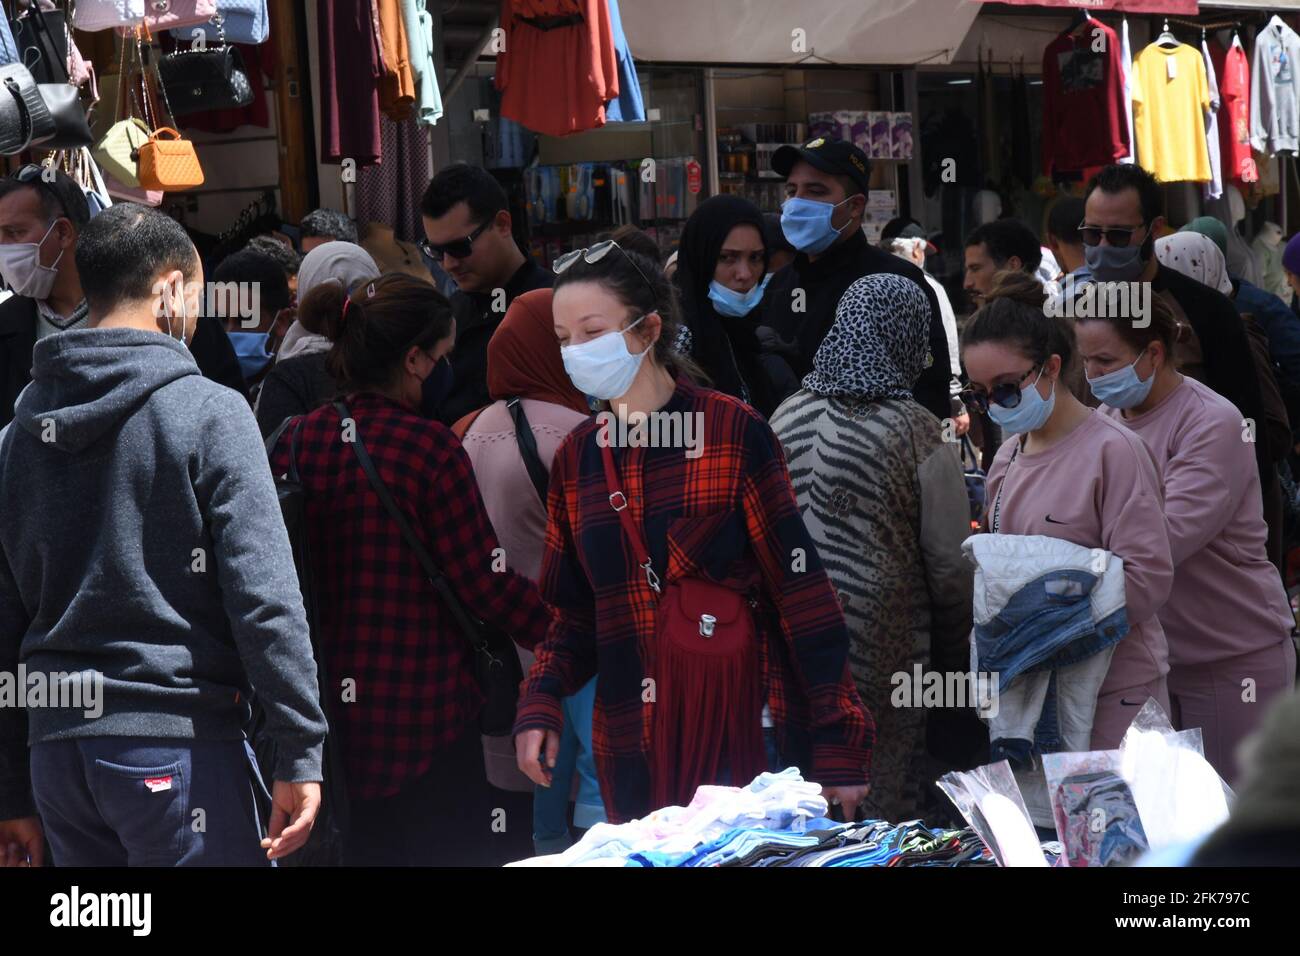 Túnez, Túnez. 28th de Abr de 2021. Las personas que llevan máscaras caminan en una calle del centro de Túnez, Túnez, 28 de abril de 2021. En medio del aumento de los casos de COVID-19 en Túnez, las autoridades tunecinas anunciaron el miércoles una serie de medidas más estrictas de prevención y control para frenar la propagación del virus. Crédito: Adel Ezzine/Xinhua/Alamy Live News Foto de stock